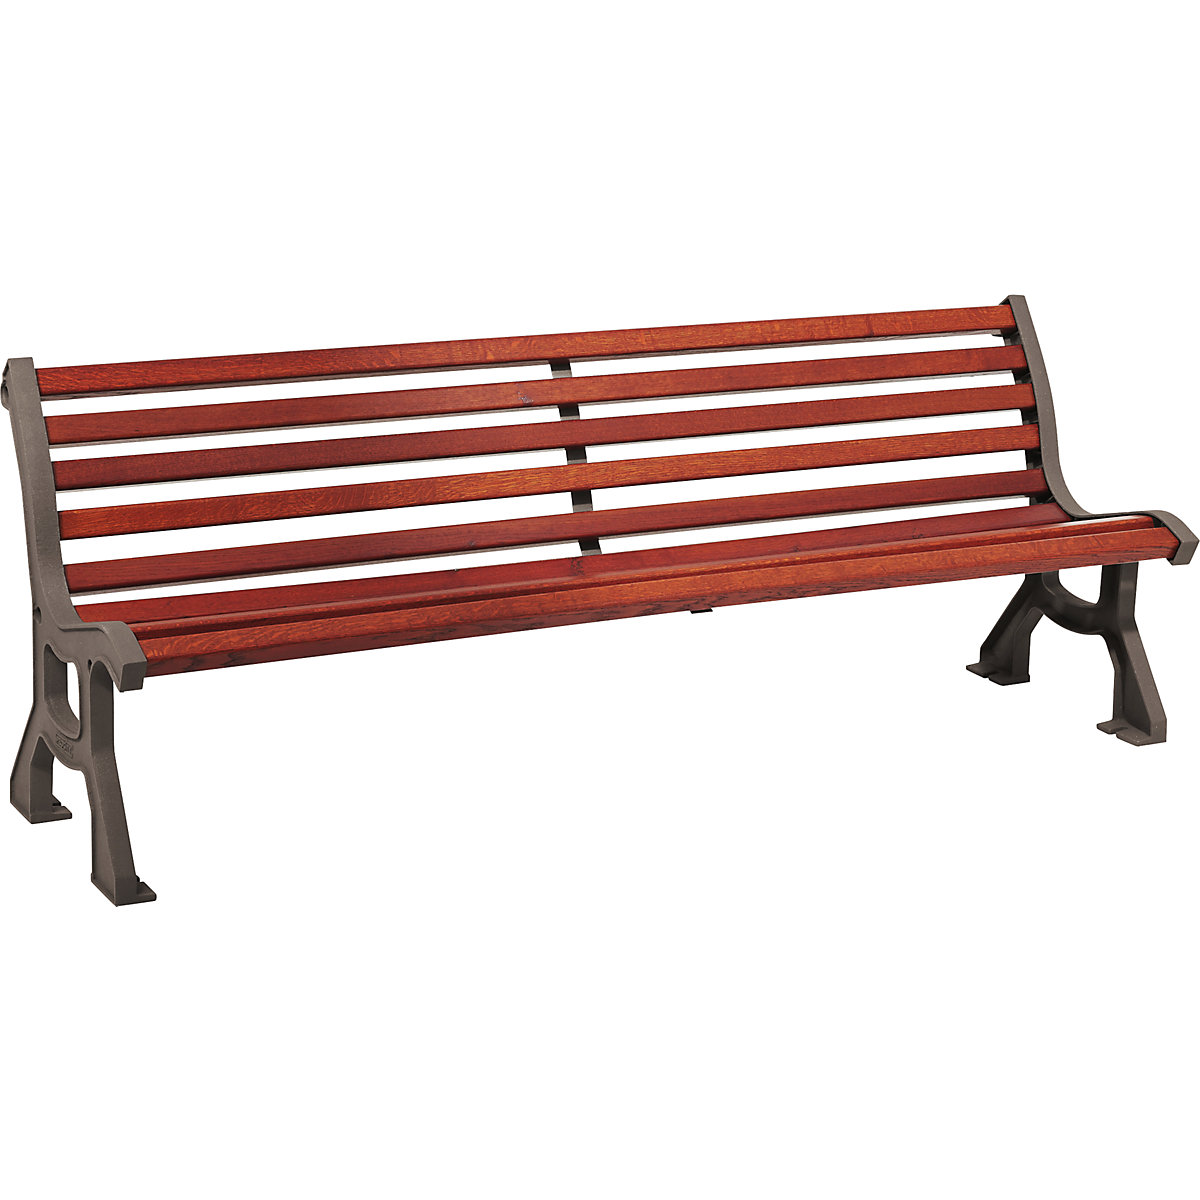 Drewniana ławka LUBLIN – PROCITY, głęb. siedziska 385 mm, metallic, mahoń-2